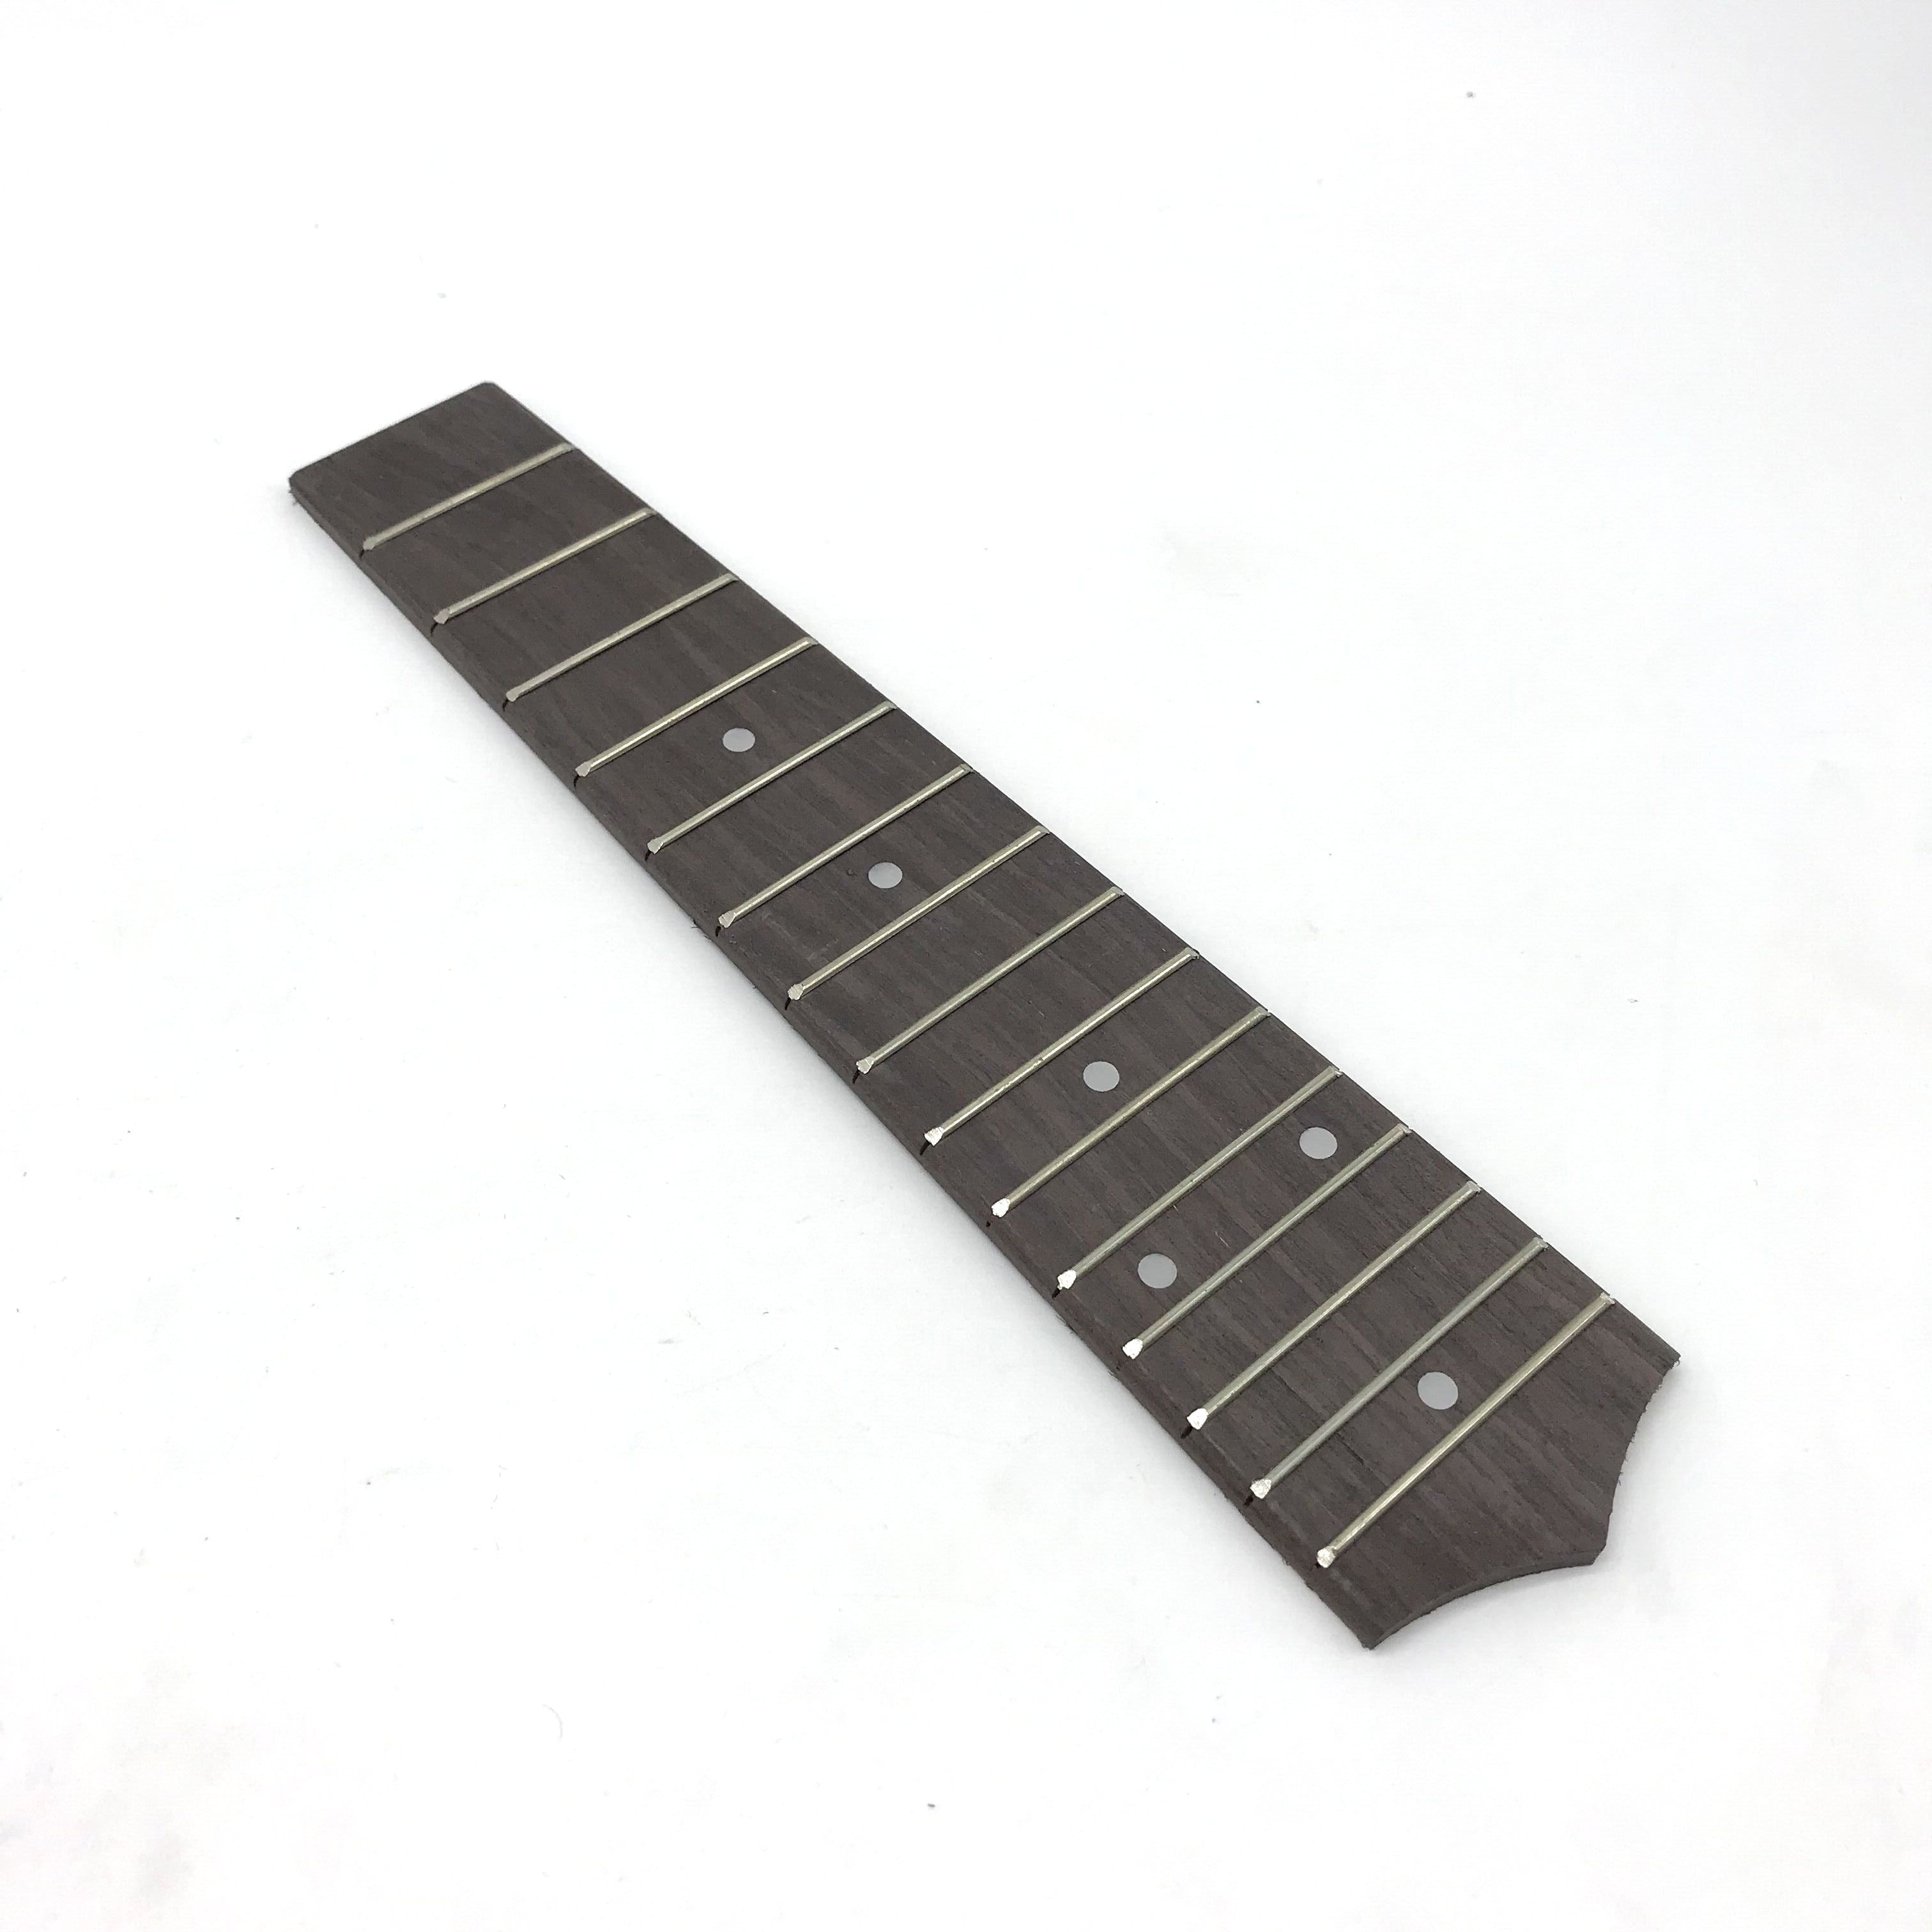 Finger plate 21 inch ukulele rose wood fingerboard Yukory finger board Guitar Fingerboard White Brass Soundstage